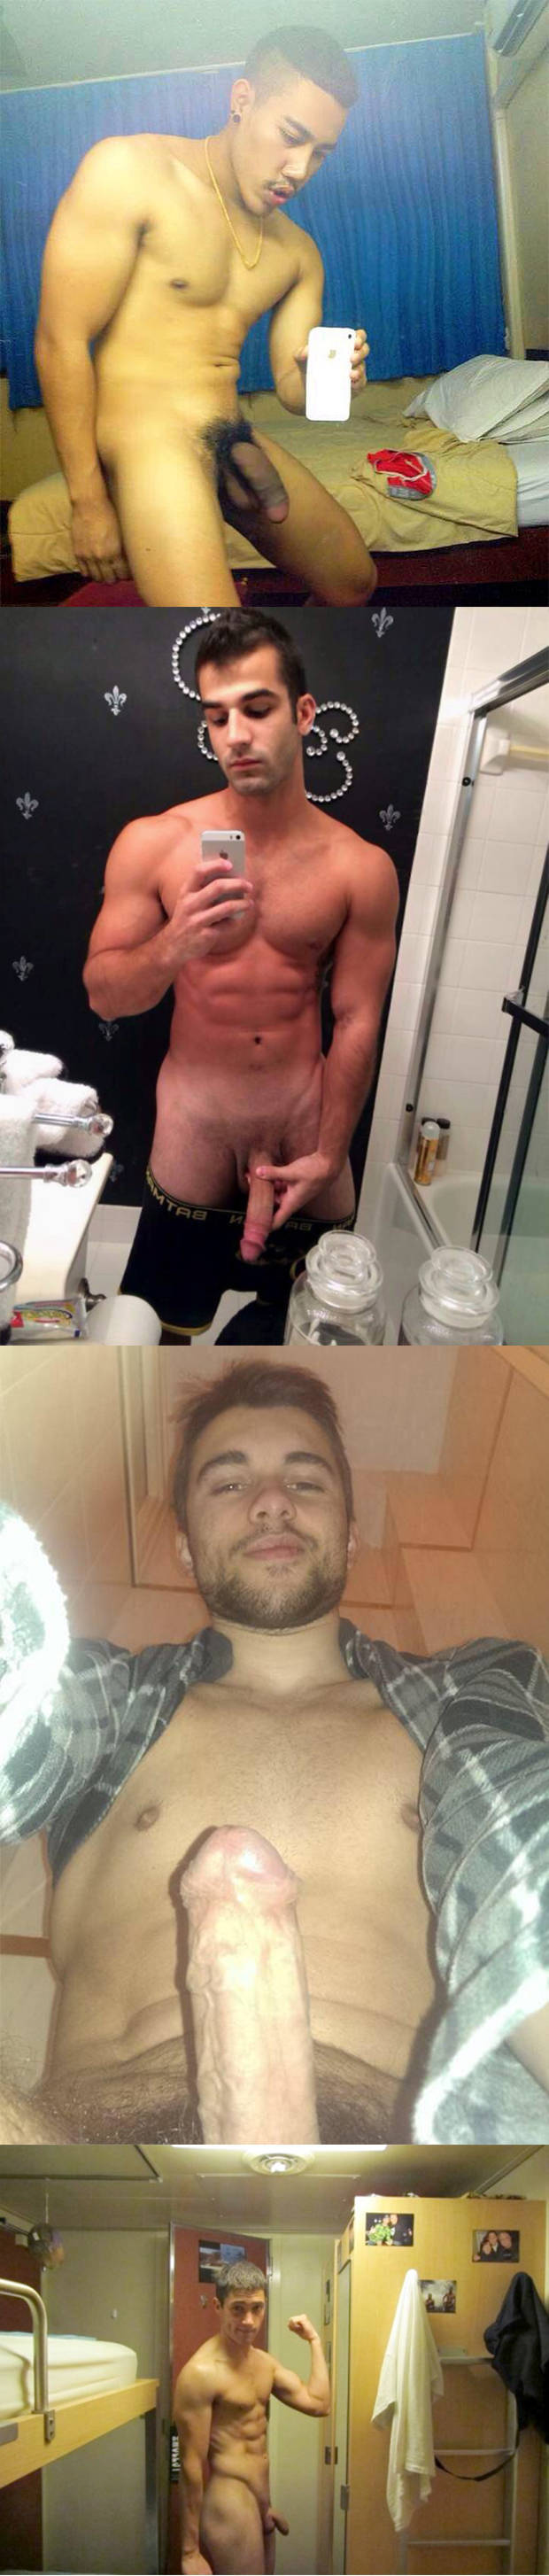 naked dudes selfies snapchat